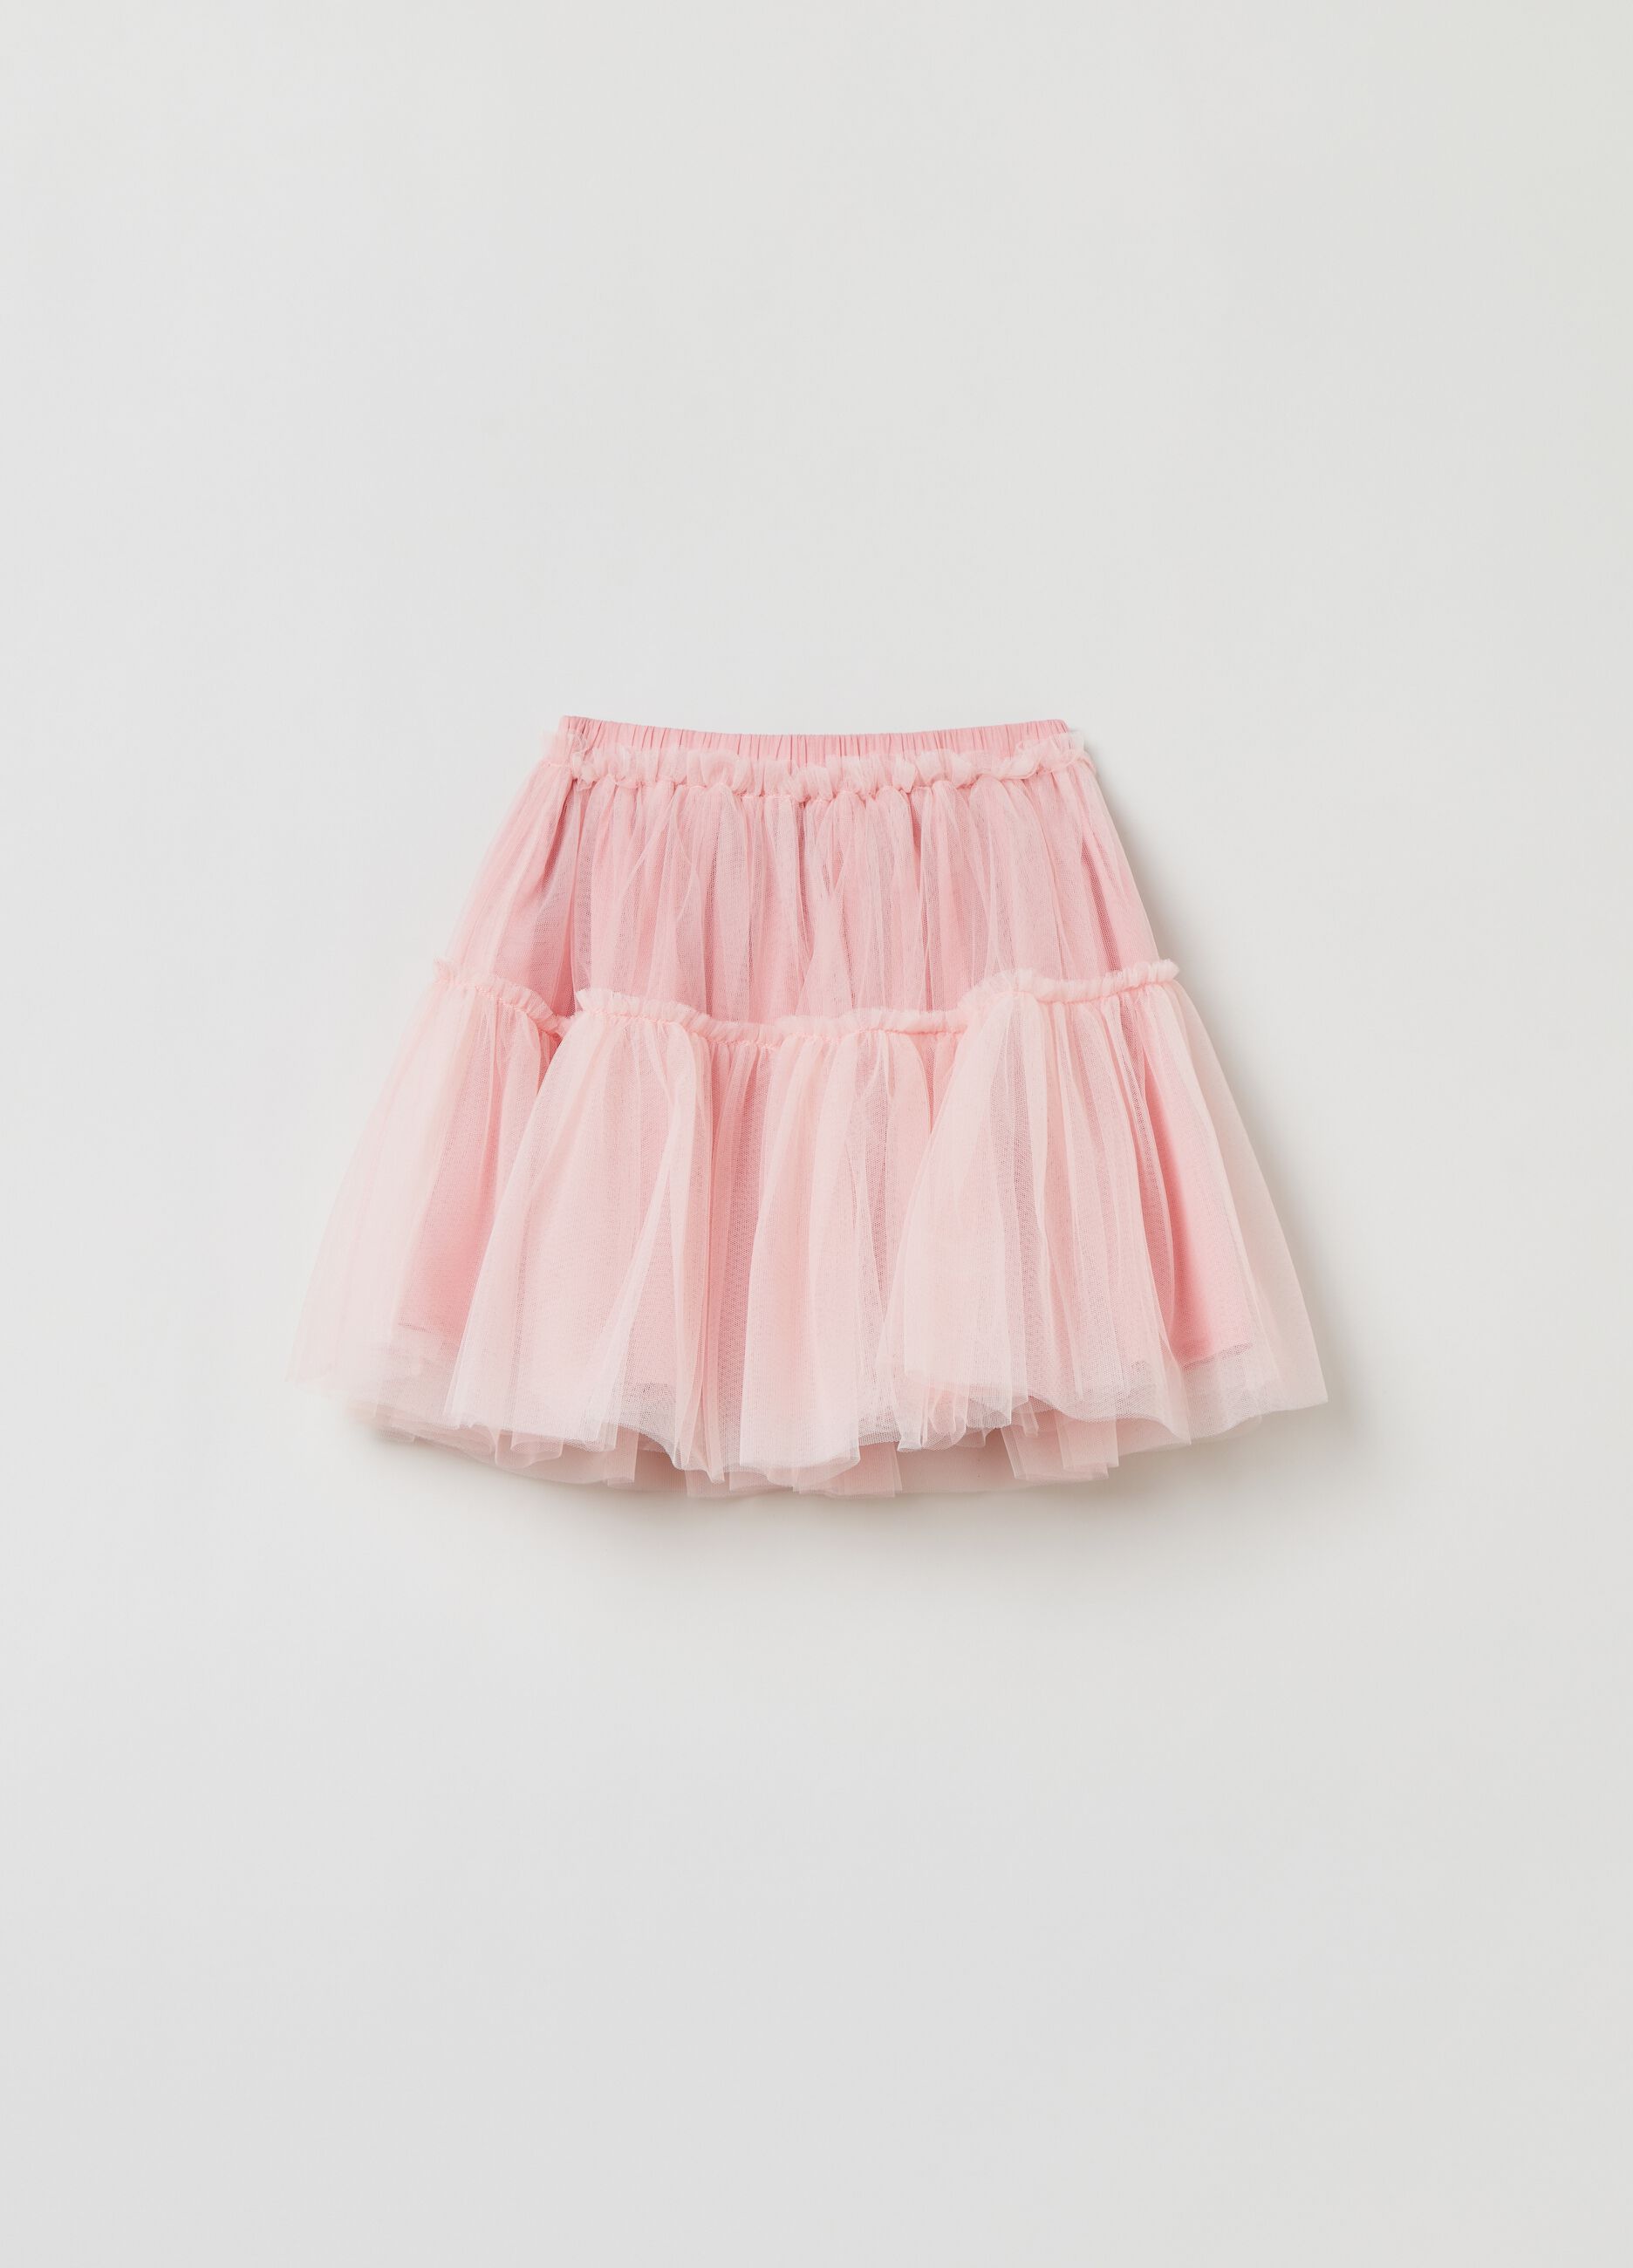 Miniskirt with tulle flounces